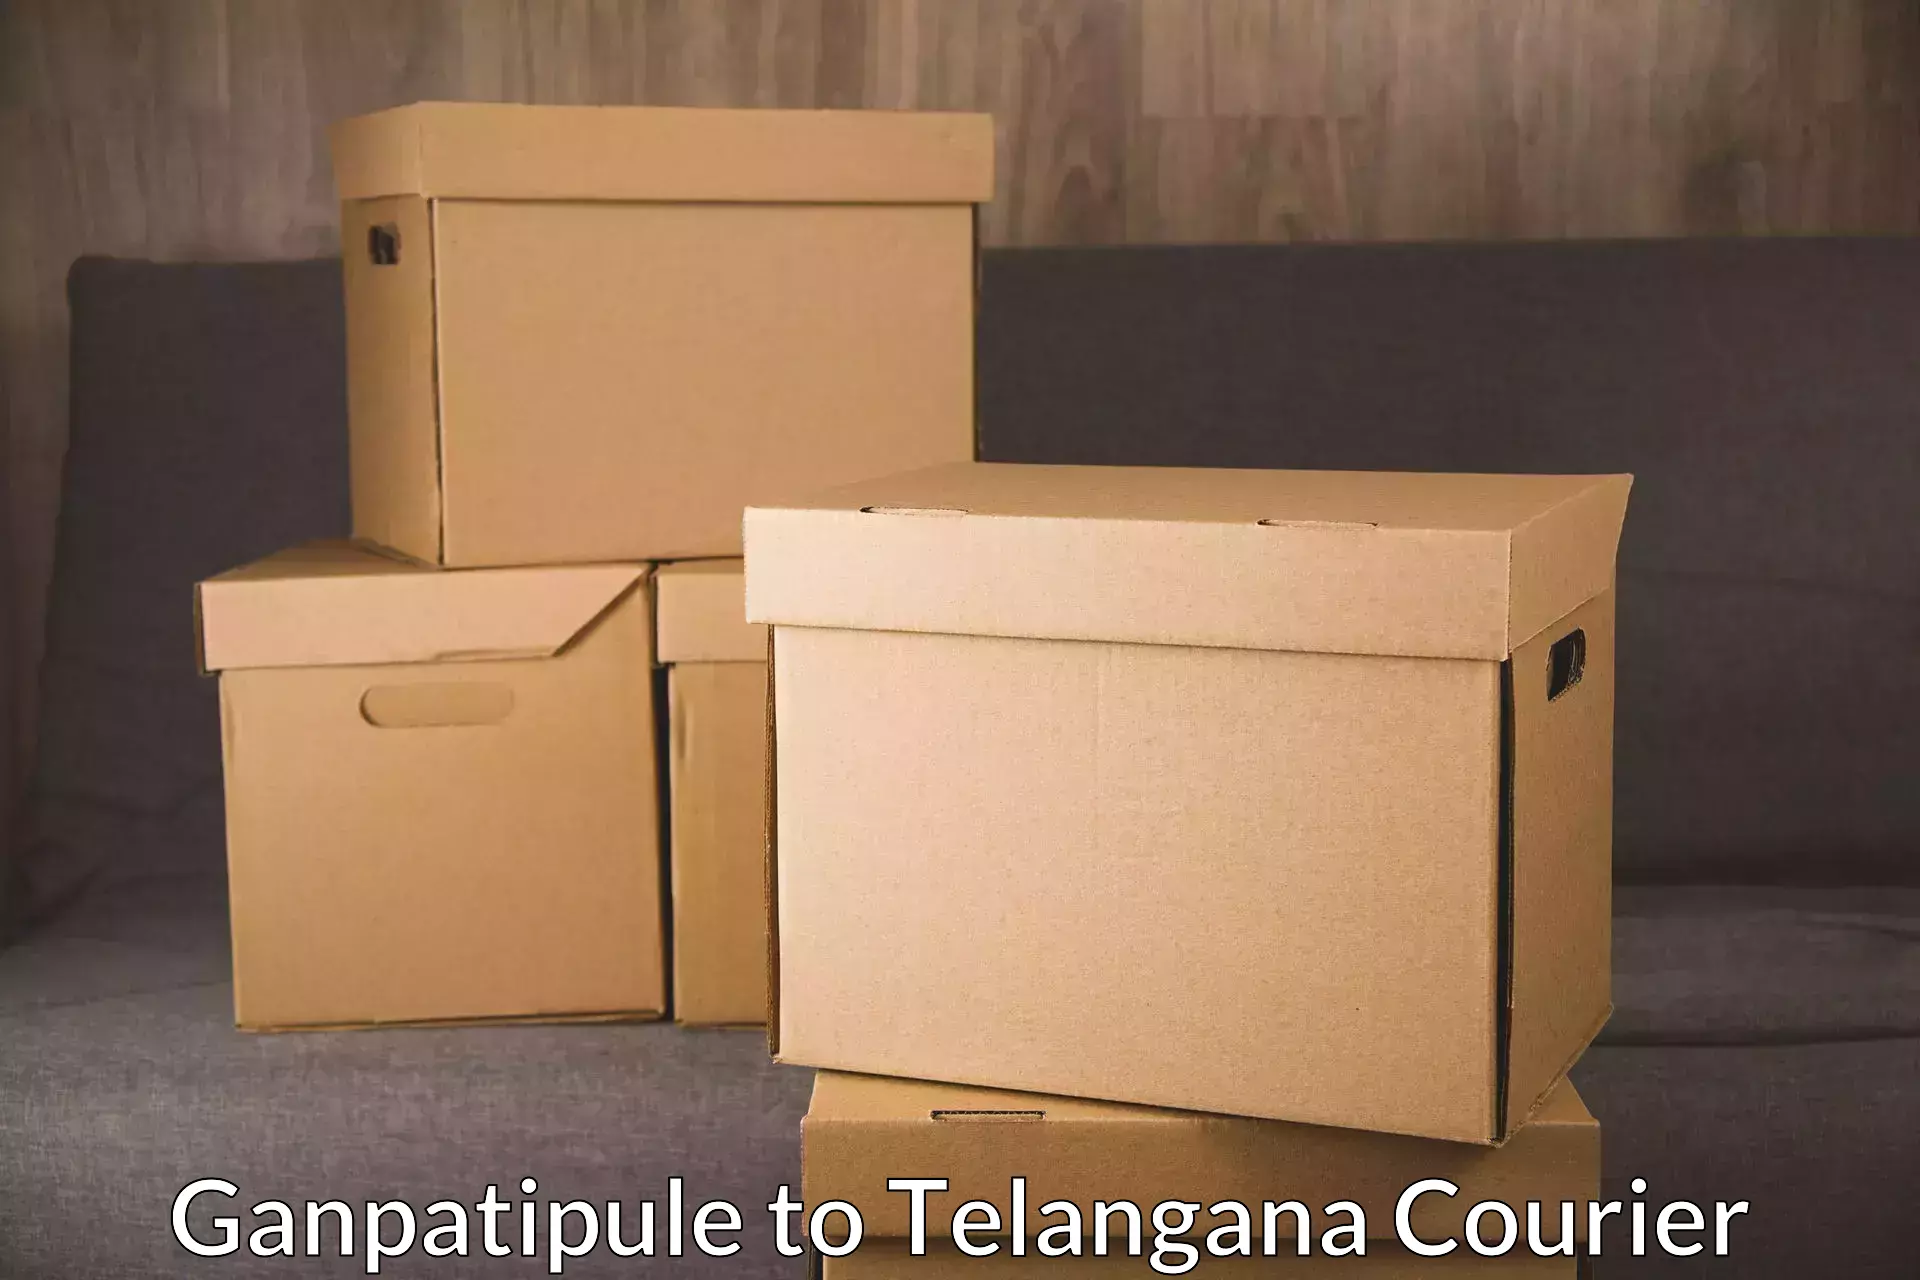 Courier membership in Ganpatipule to Shankarpalle